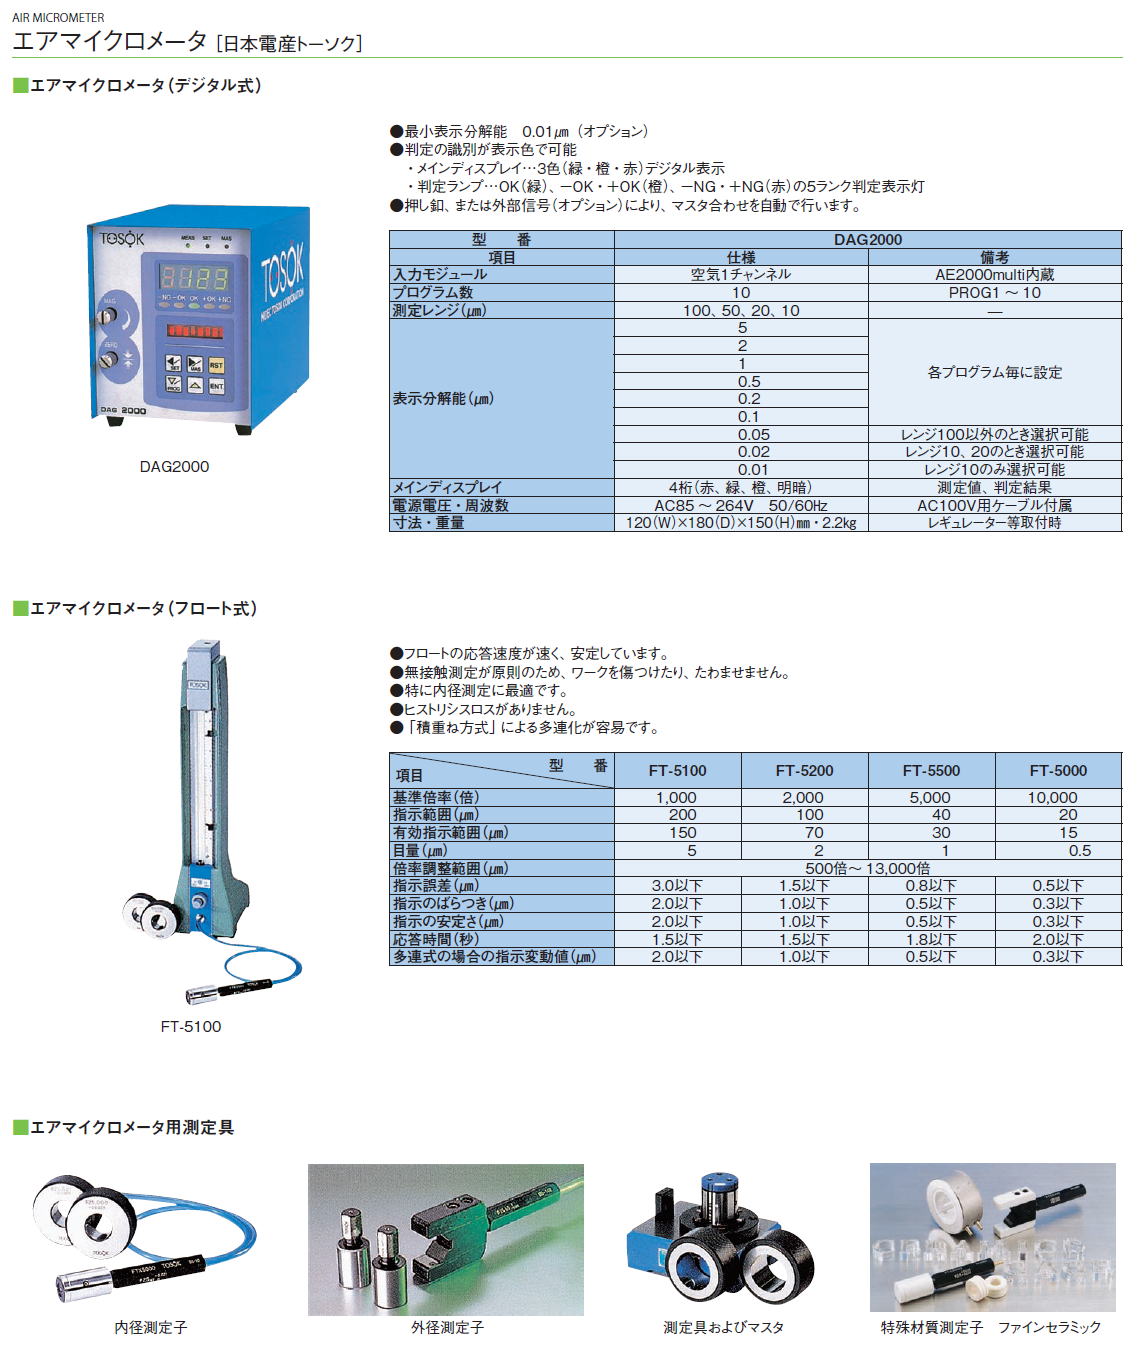 測定工具　エアマイクロメータ［ 日本電産トーソク］  エアマイクロメータ（デジタル式）DAG200,エアマイクロメータ（フロート式）FT-5100,エアマイクロメータ（フロート式）FT-5200,エアマイクロメータ（フロート式）FT-5500,エアマイクロメータ（フロート式）FT-5000